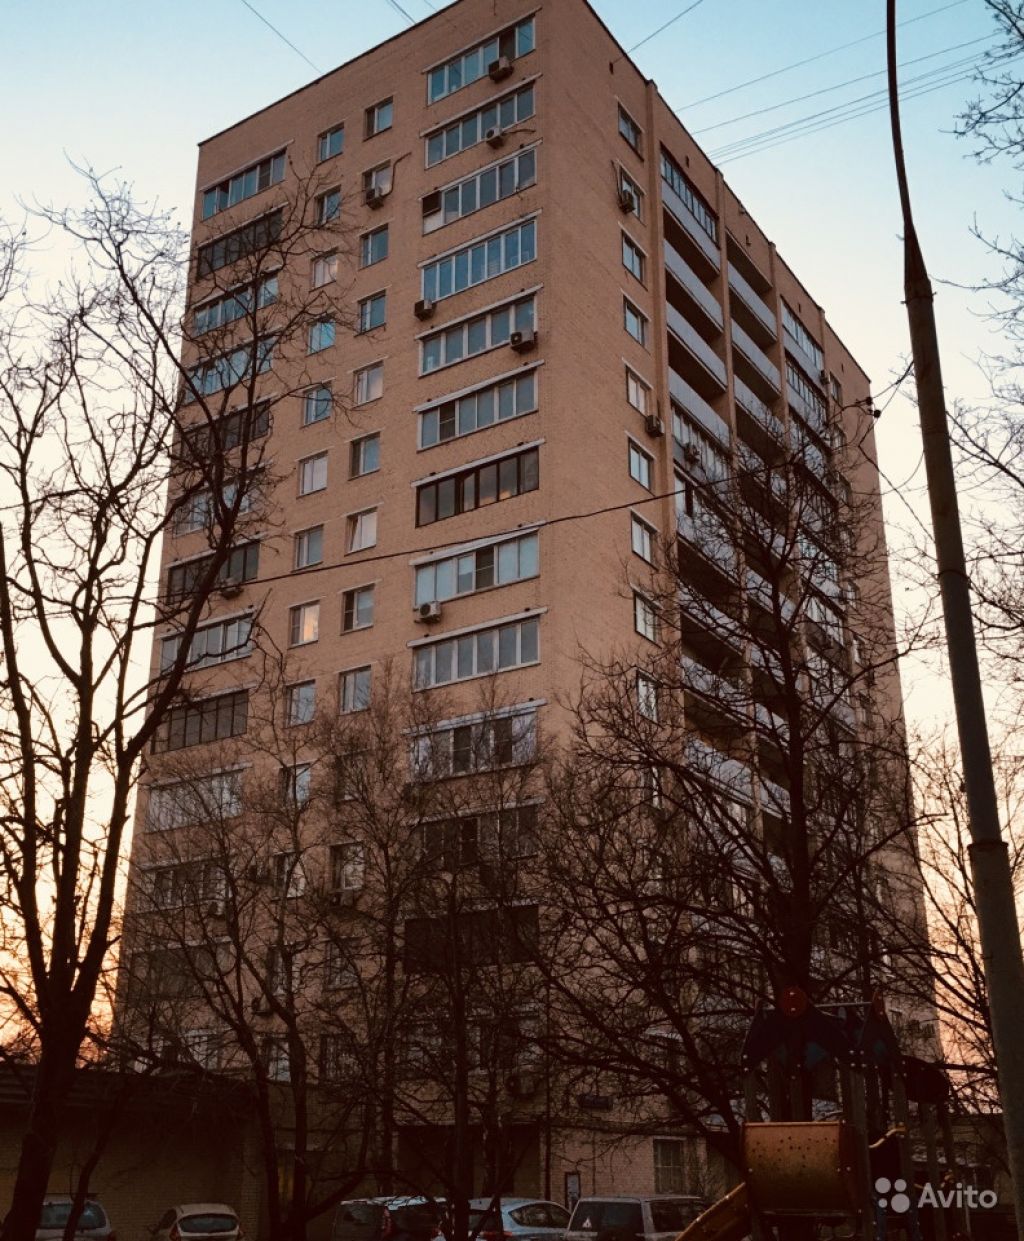 Продам квартиру 1-к квартира 36 м² на 13 этаже 14-этажного кирпичного дома в Москве. Фото 1